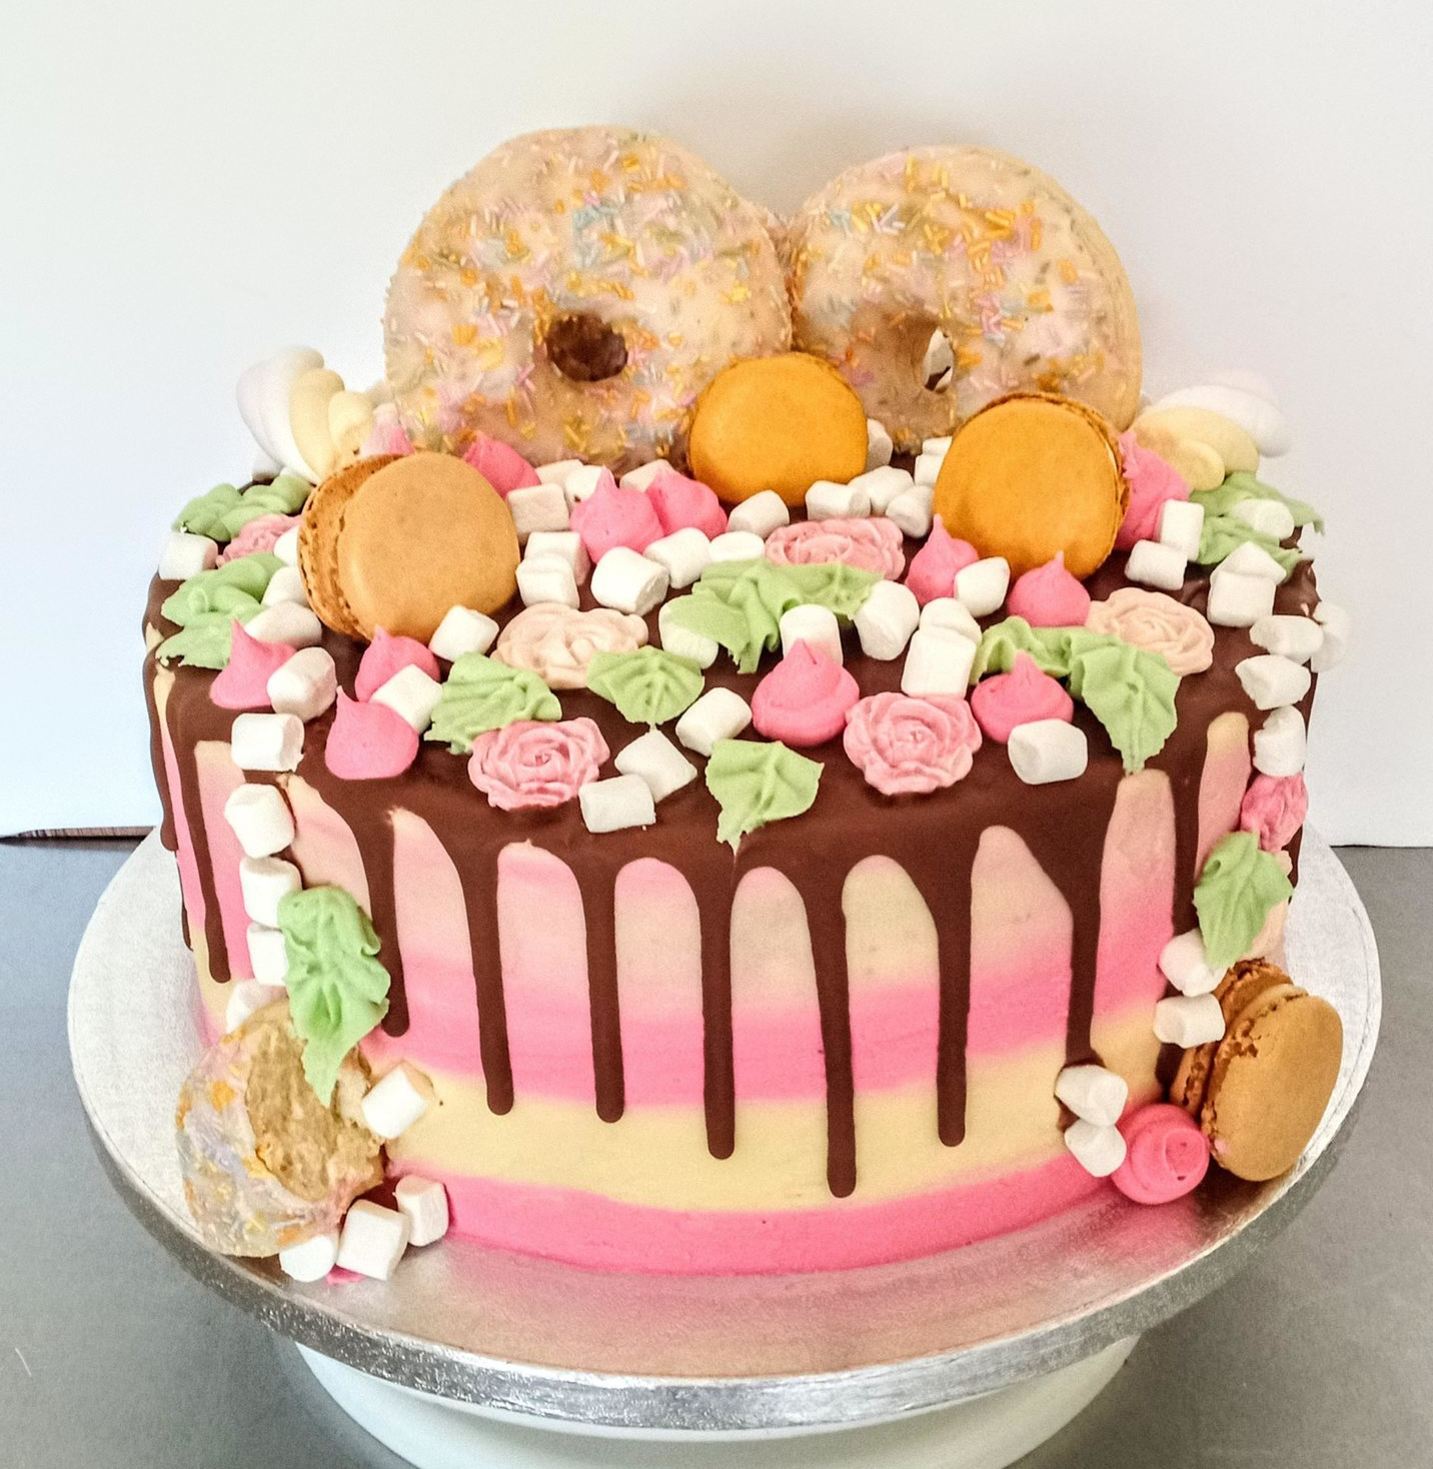 A fun ladies doughnut drip cake